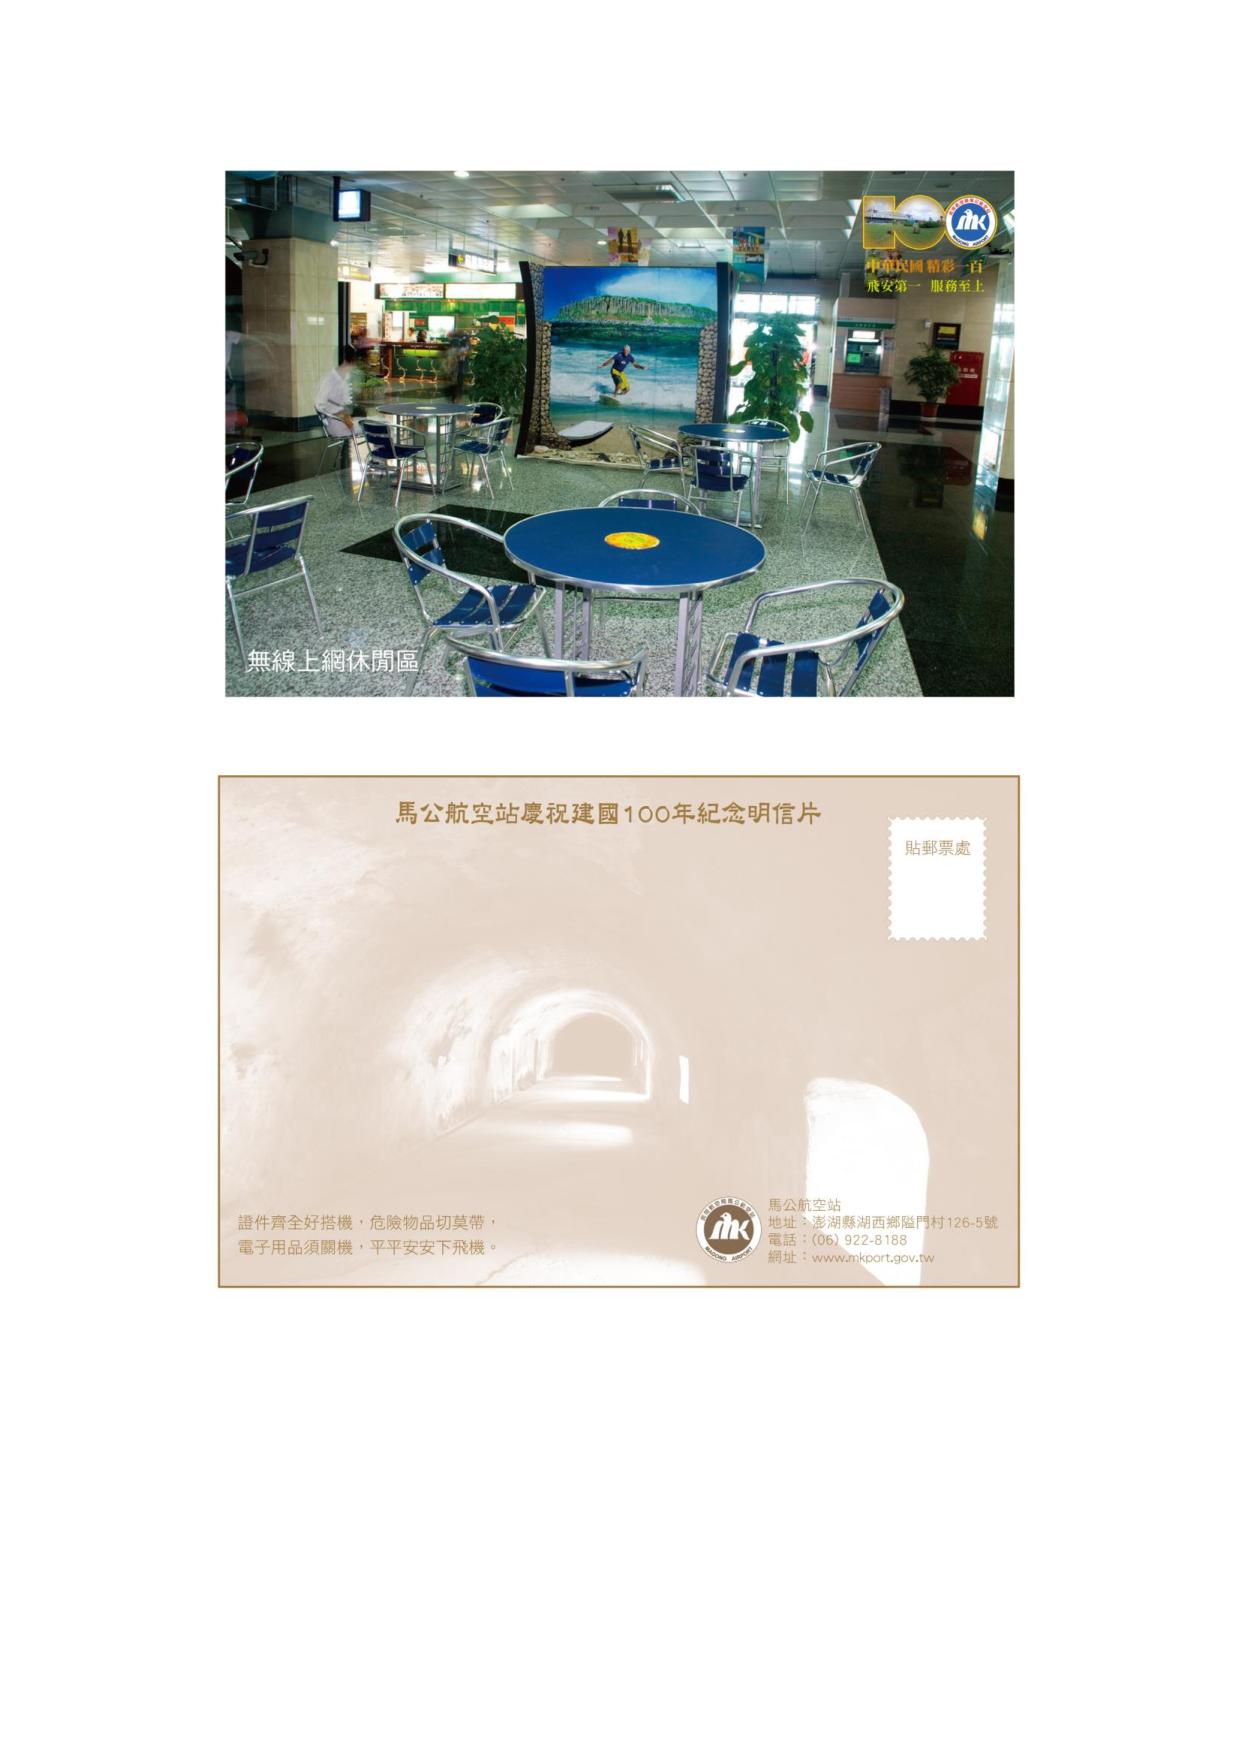 馬公站慶祝建國一百年紀念明信片5